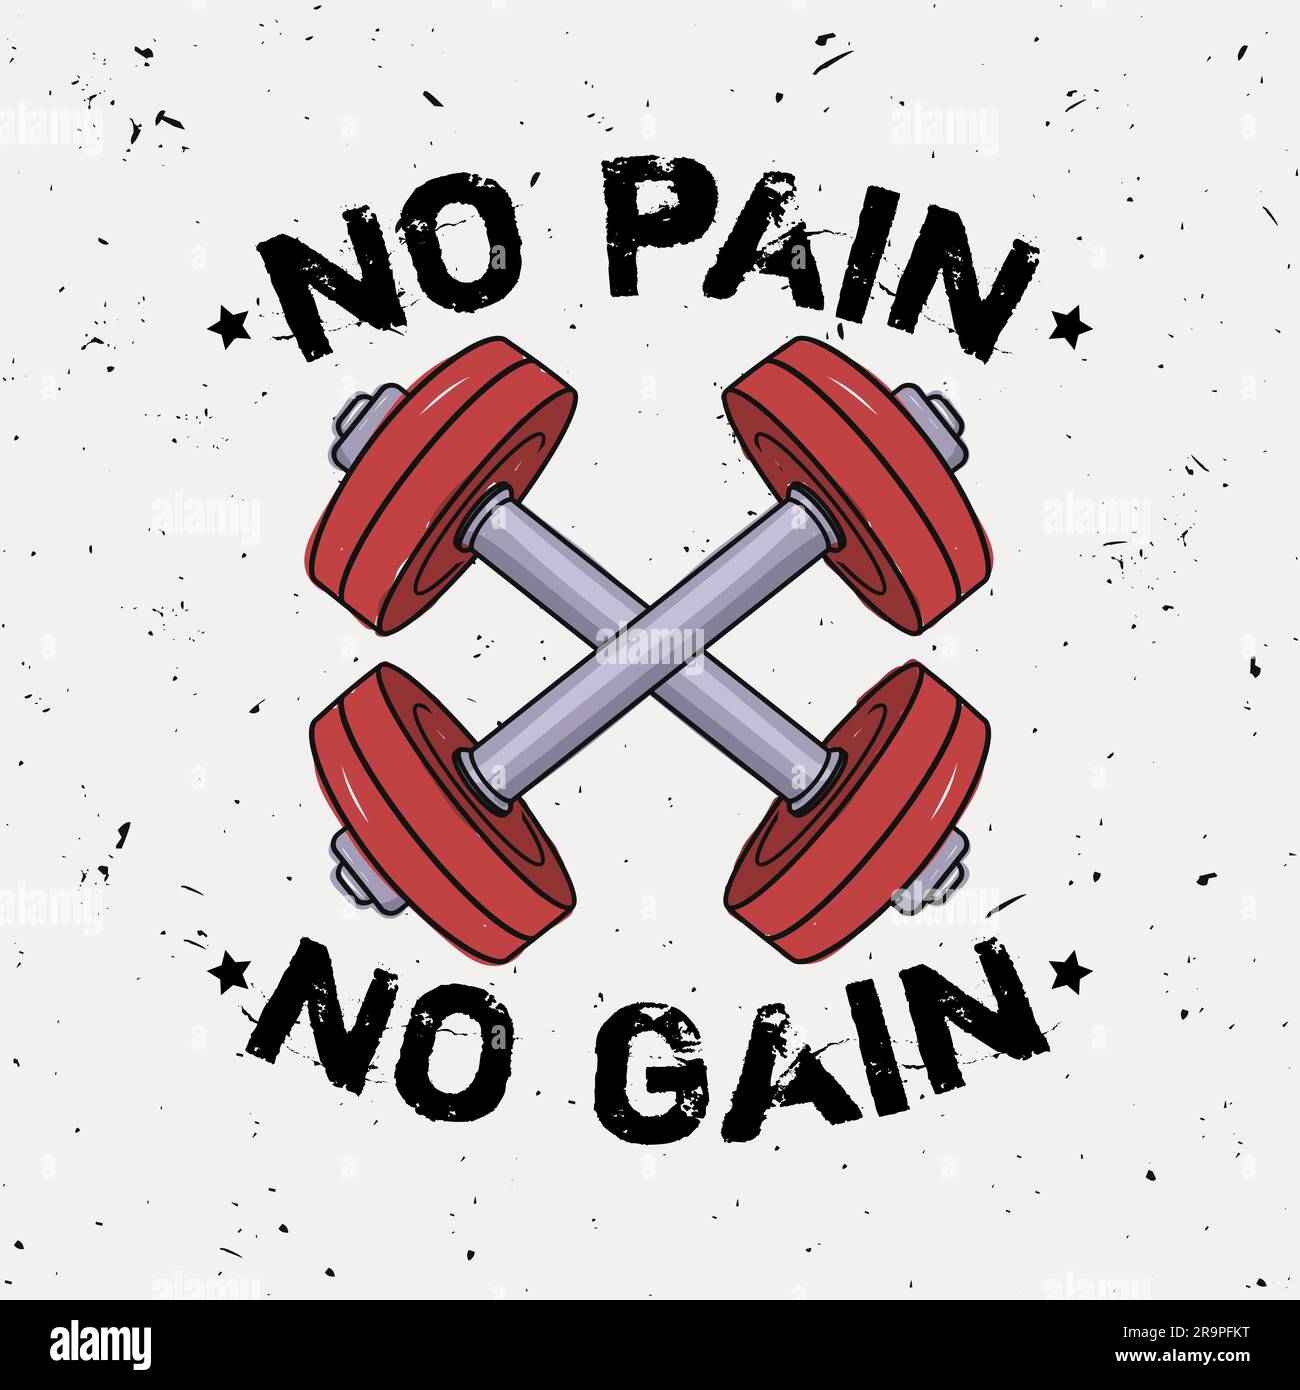 Illustrazione del grunge vettoriale di manubri e frase motivazionale "No pain no gain". Preparazione fisica. Illustrazione Vettoriale